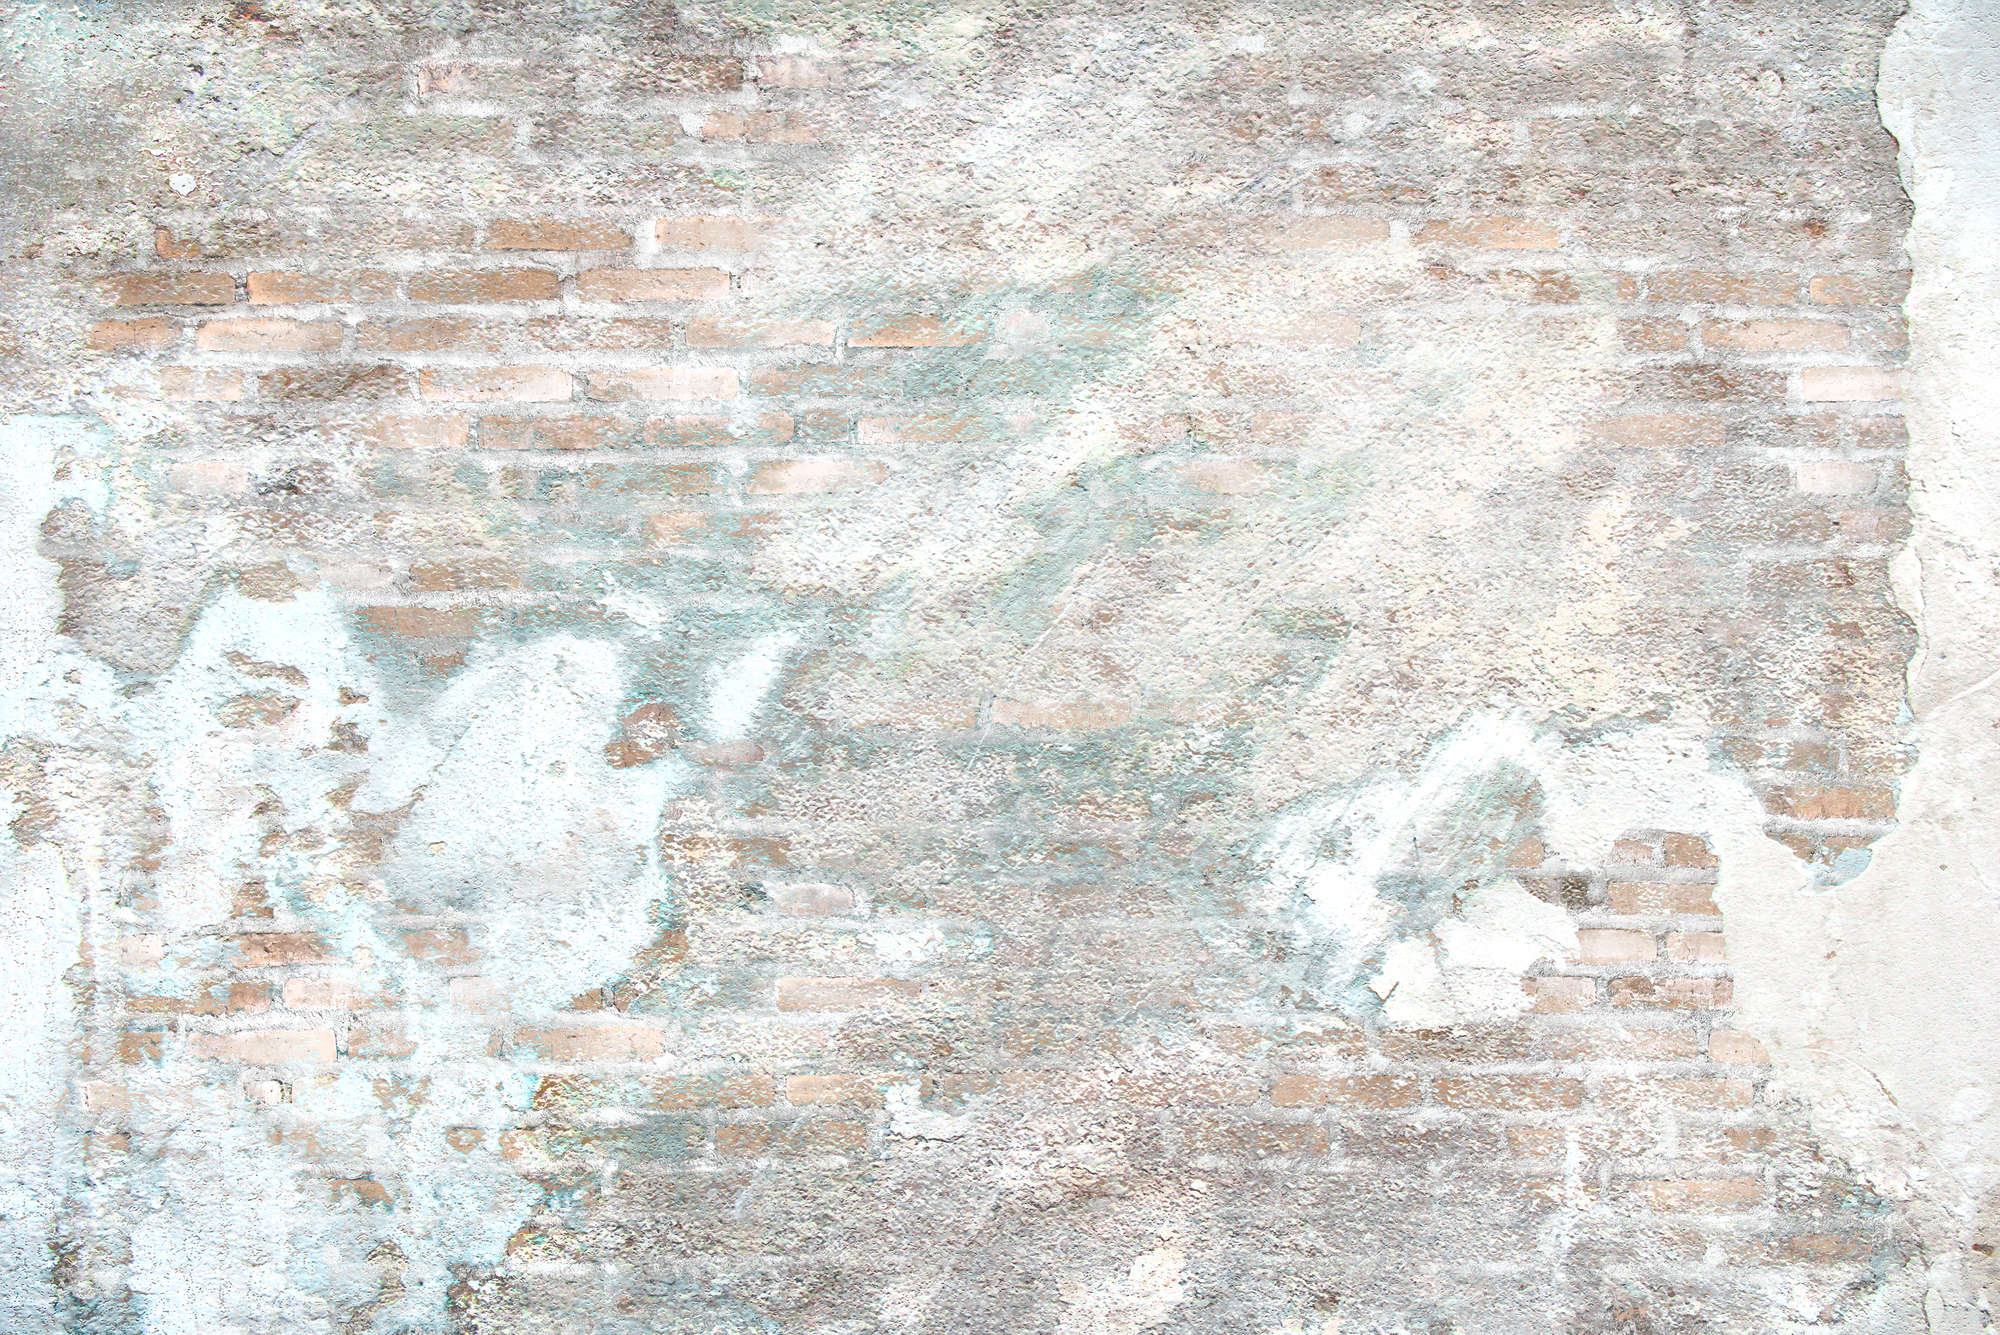             Fototapete Steinwand mit Putzresten – Mattes Glattvlies
        